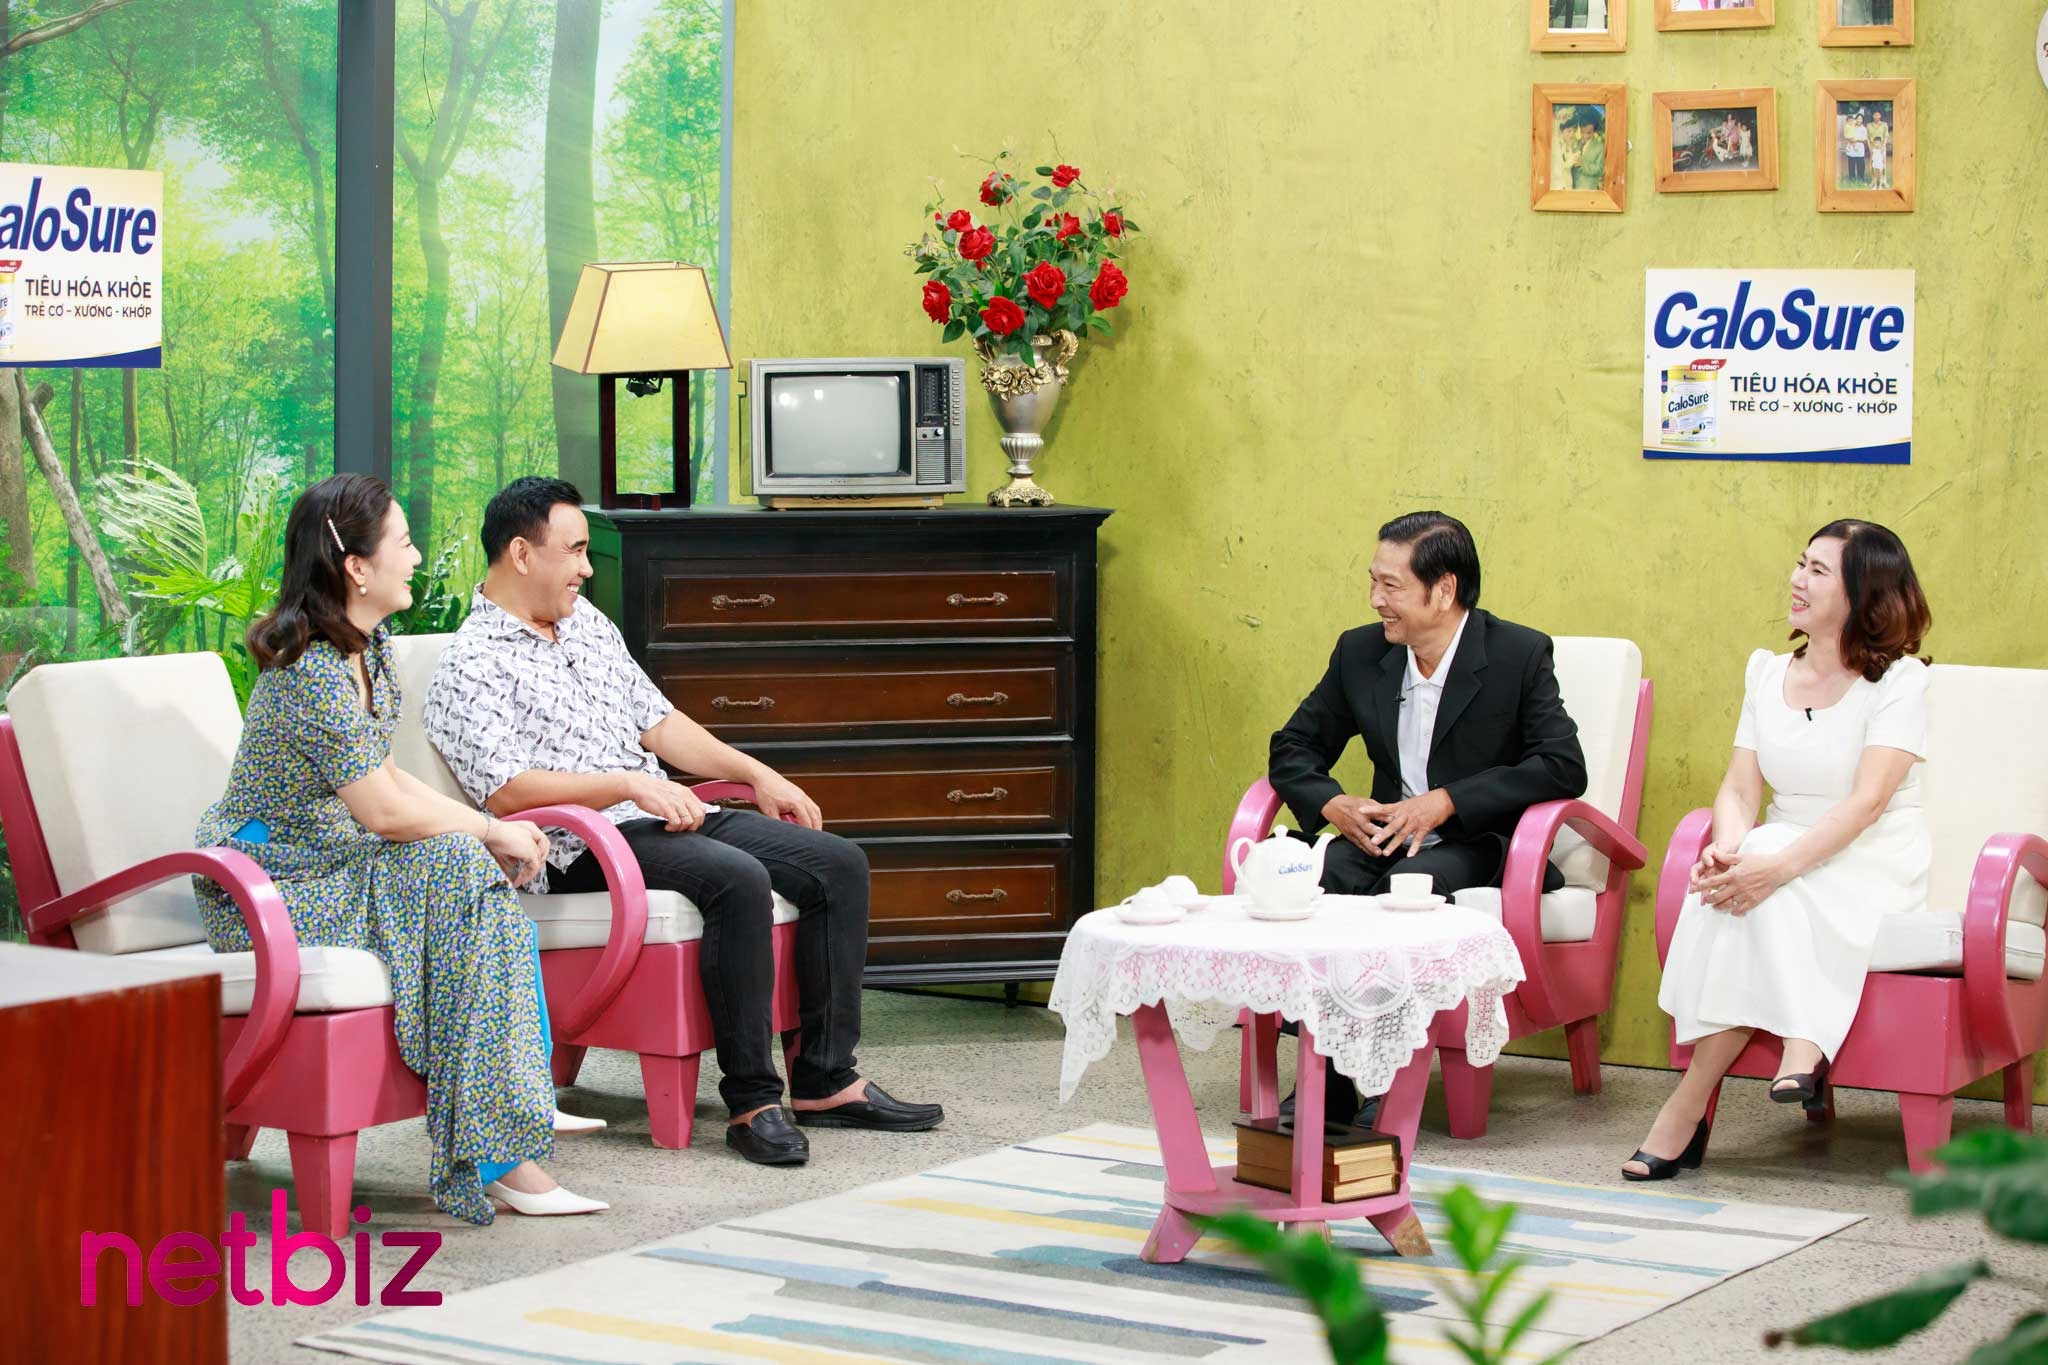 Diễn viên Đỗ Khánh Vân (Mắt biếc): Bố mẹ hãy cho con cơ hội báo hiếu